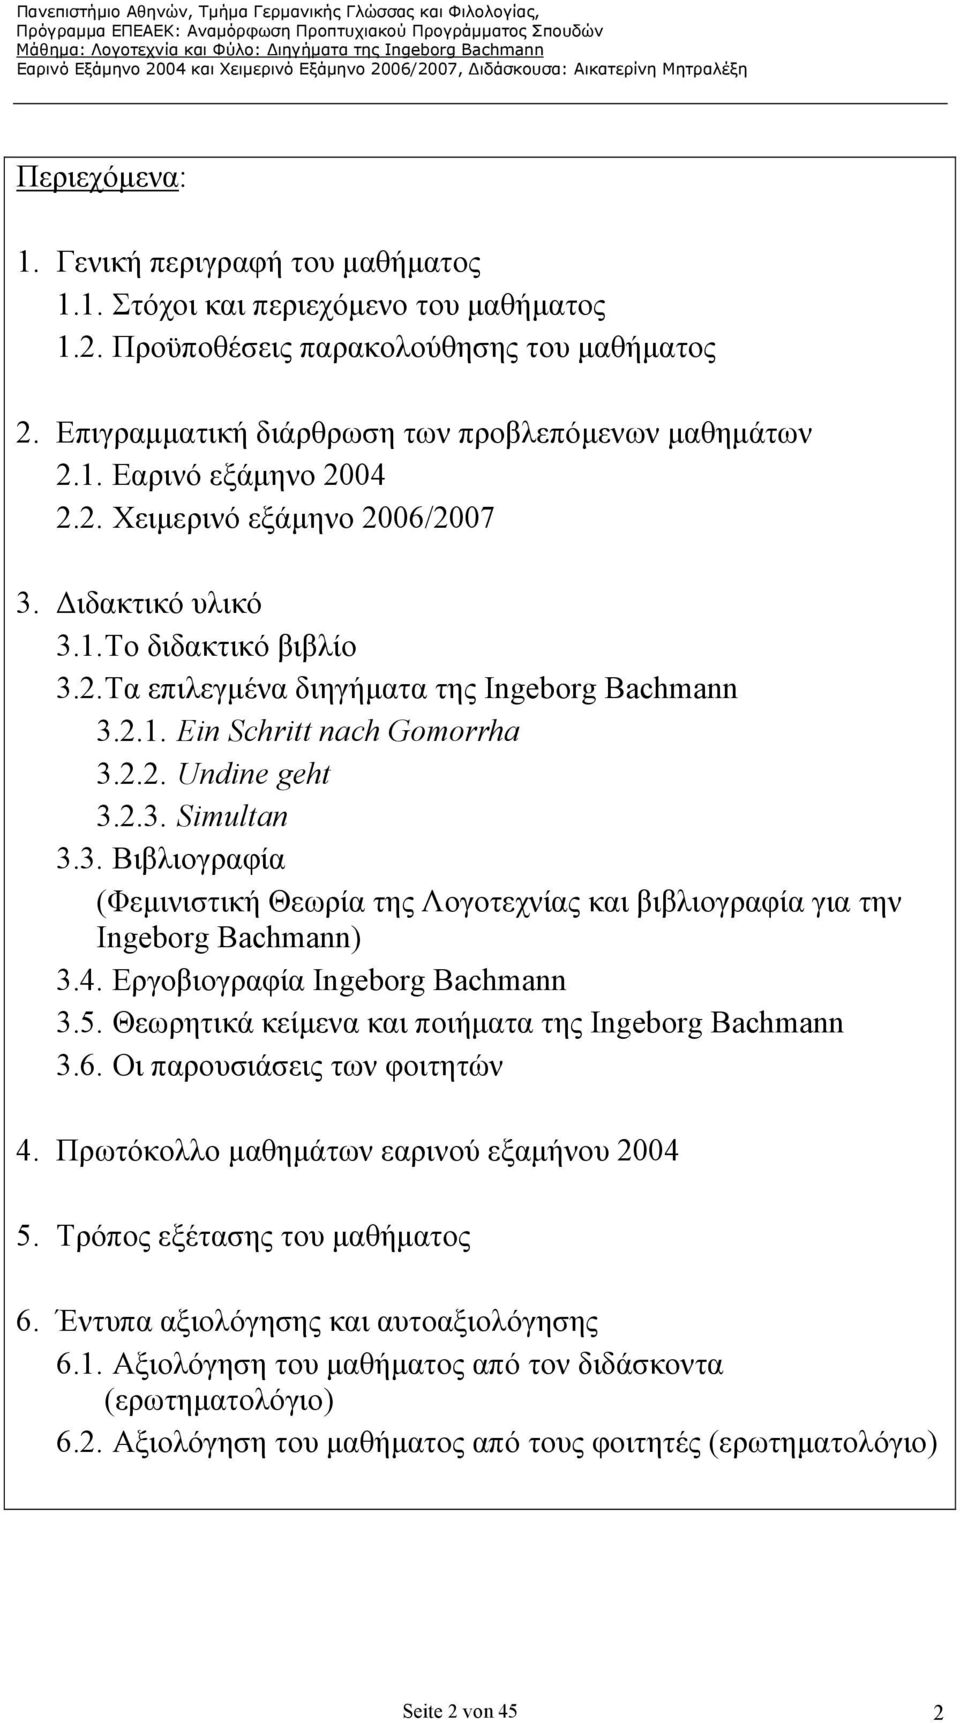 4. Εργοβιογραφία Ingeborg Bachmann 3.5. Θεωρητικά κείµενα και ποιήµατα της Ingeborg Bachmann 3.6. Οι παρουσιάσεις των φοιτητών 4. Πρωτόκολλο µαθηµάτων εαρινού εξαµήνου 2004 5.